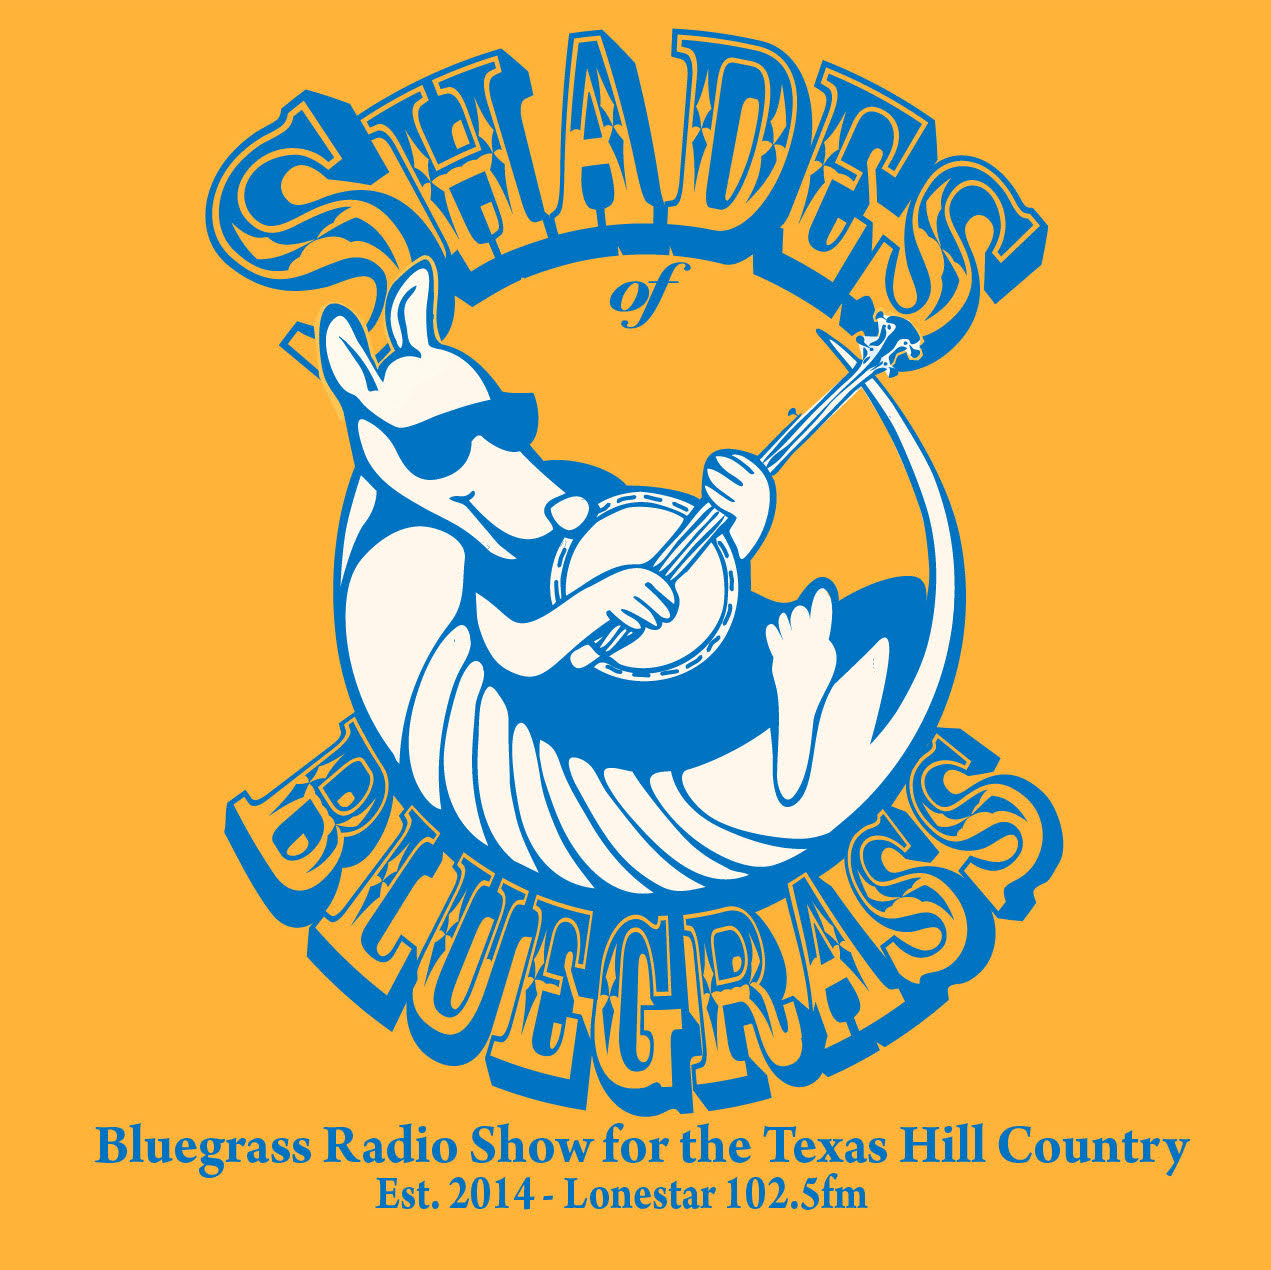 Shades of Bluegrass